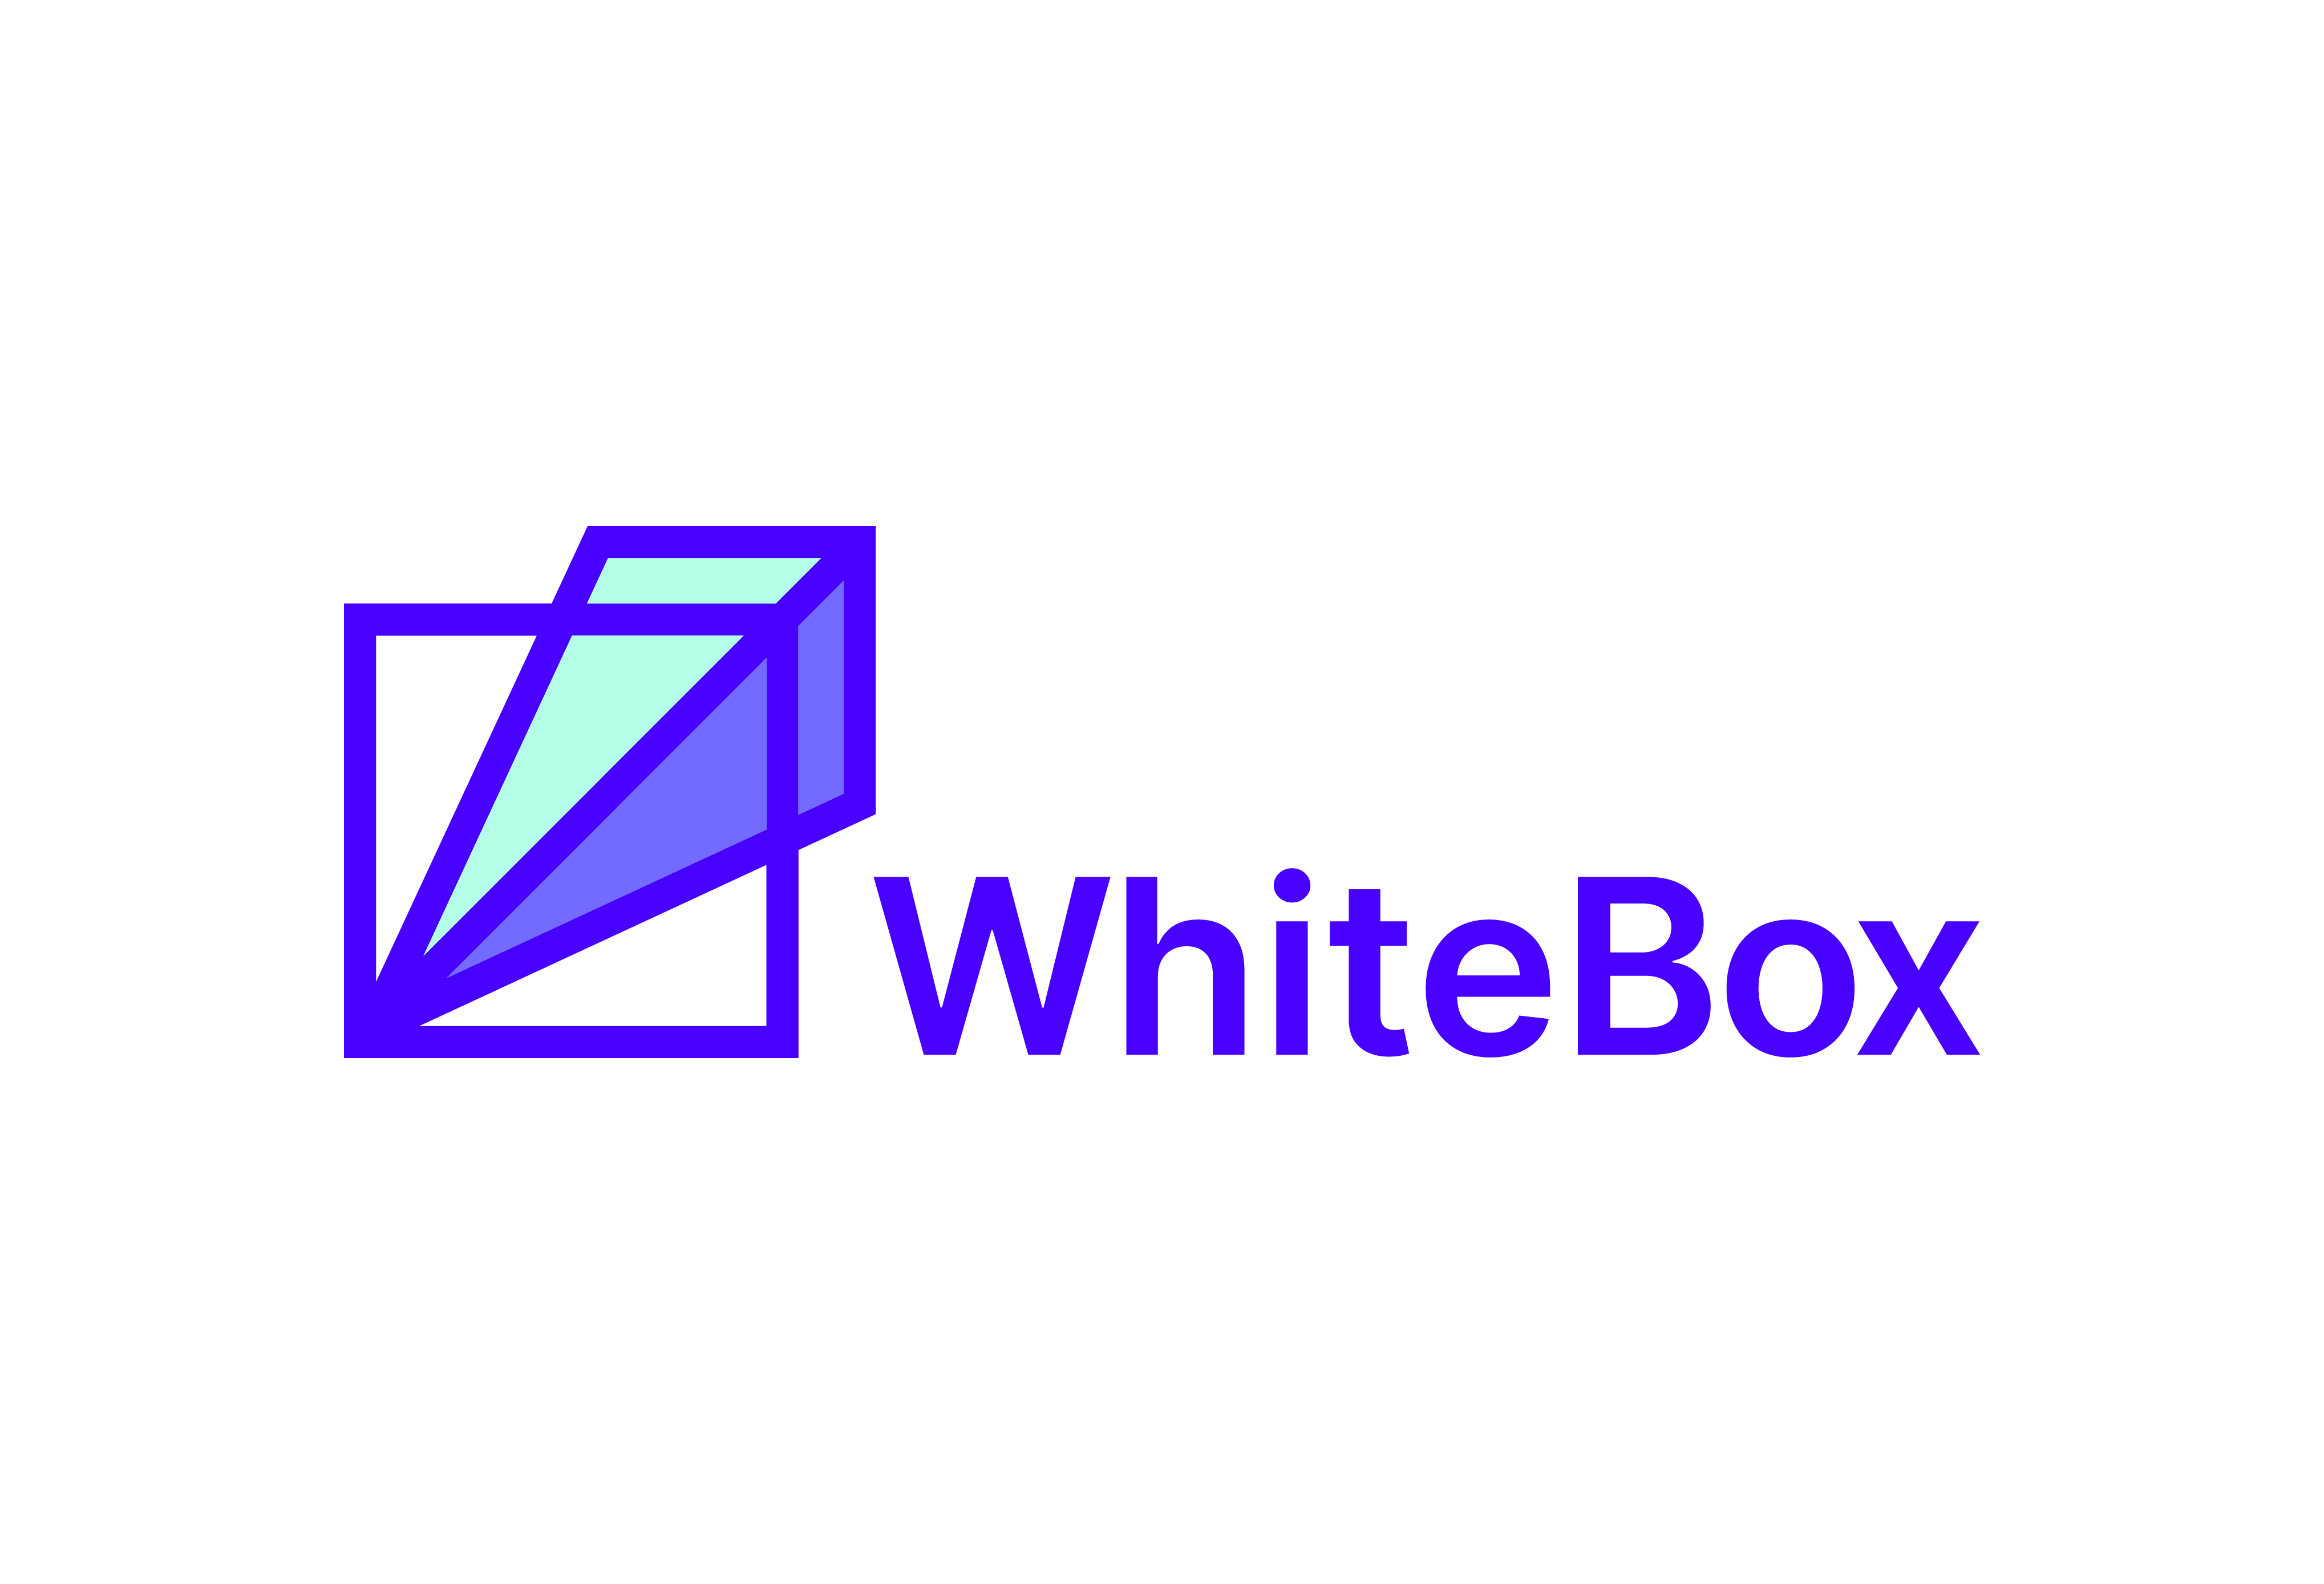 whiteboxml logo